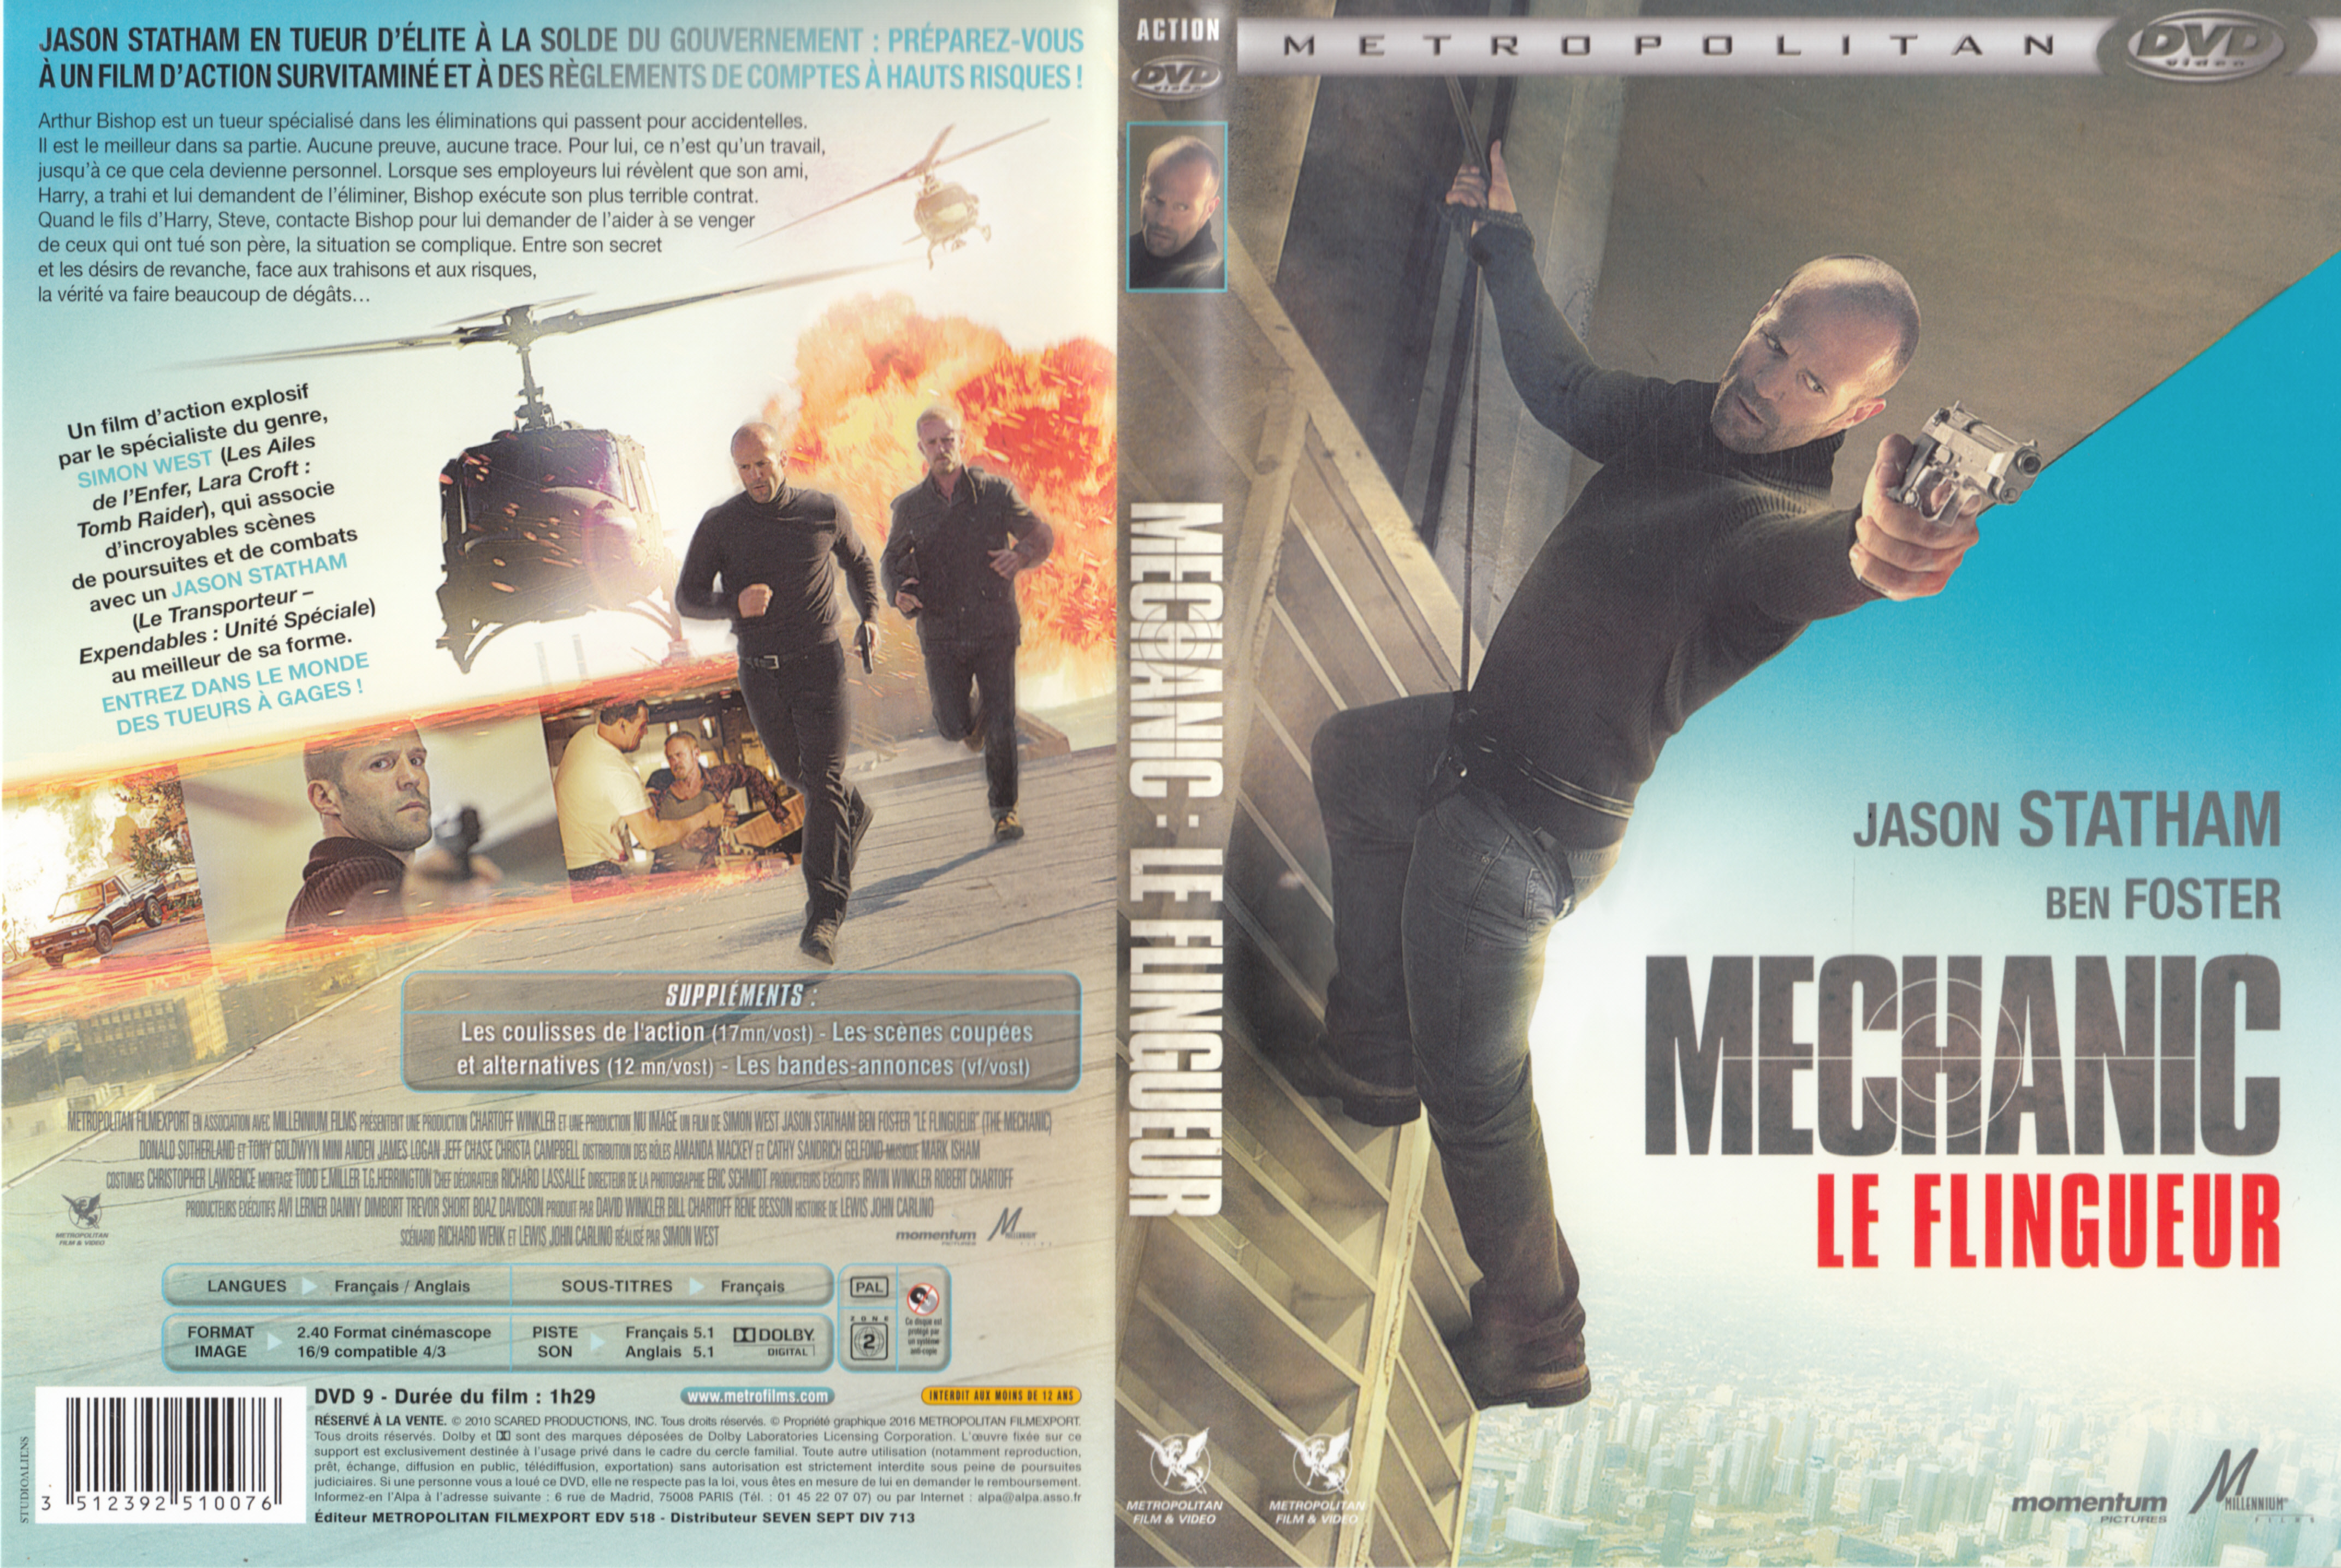 Jaquette DVD Mechanic Le flingueur